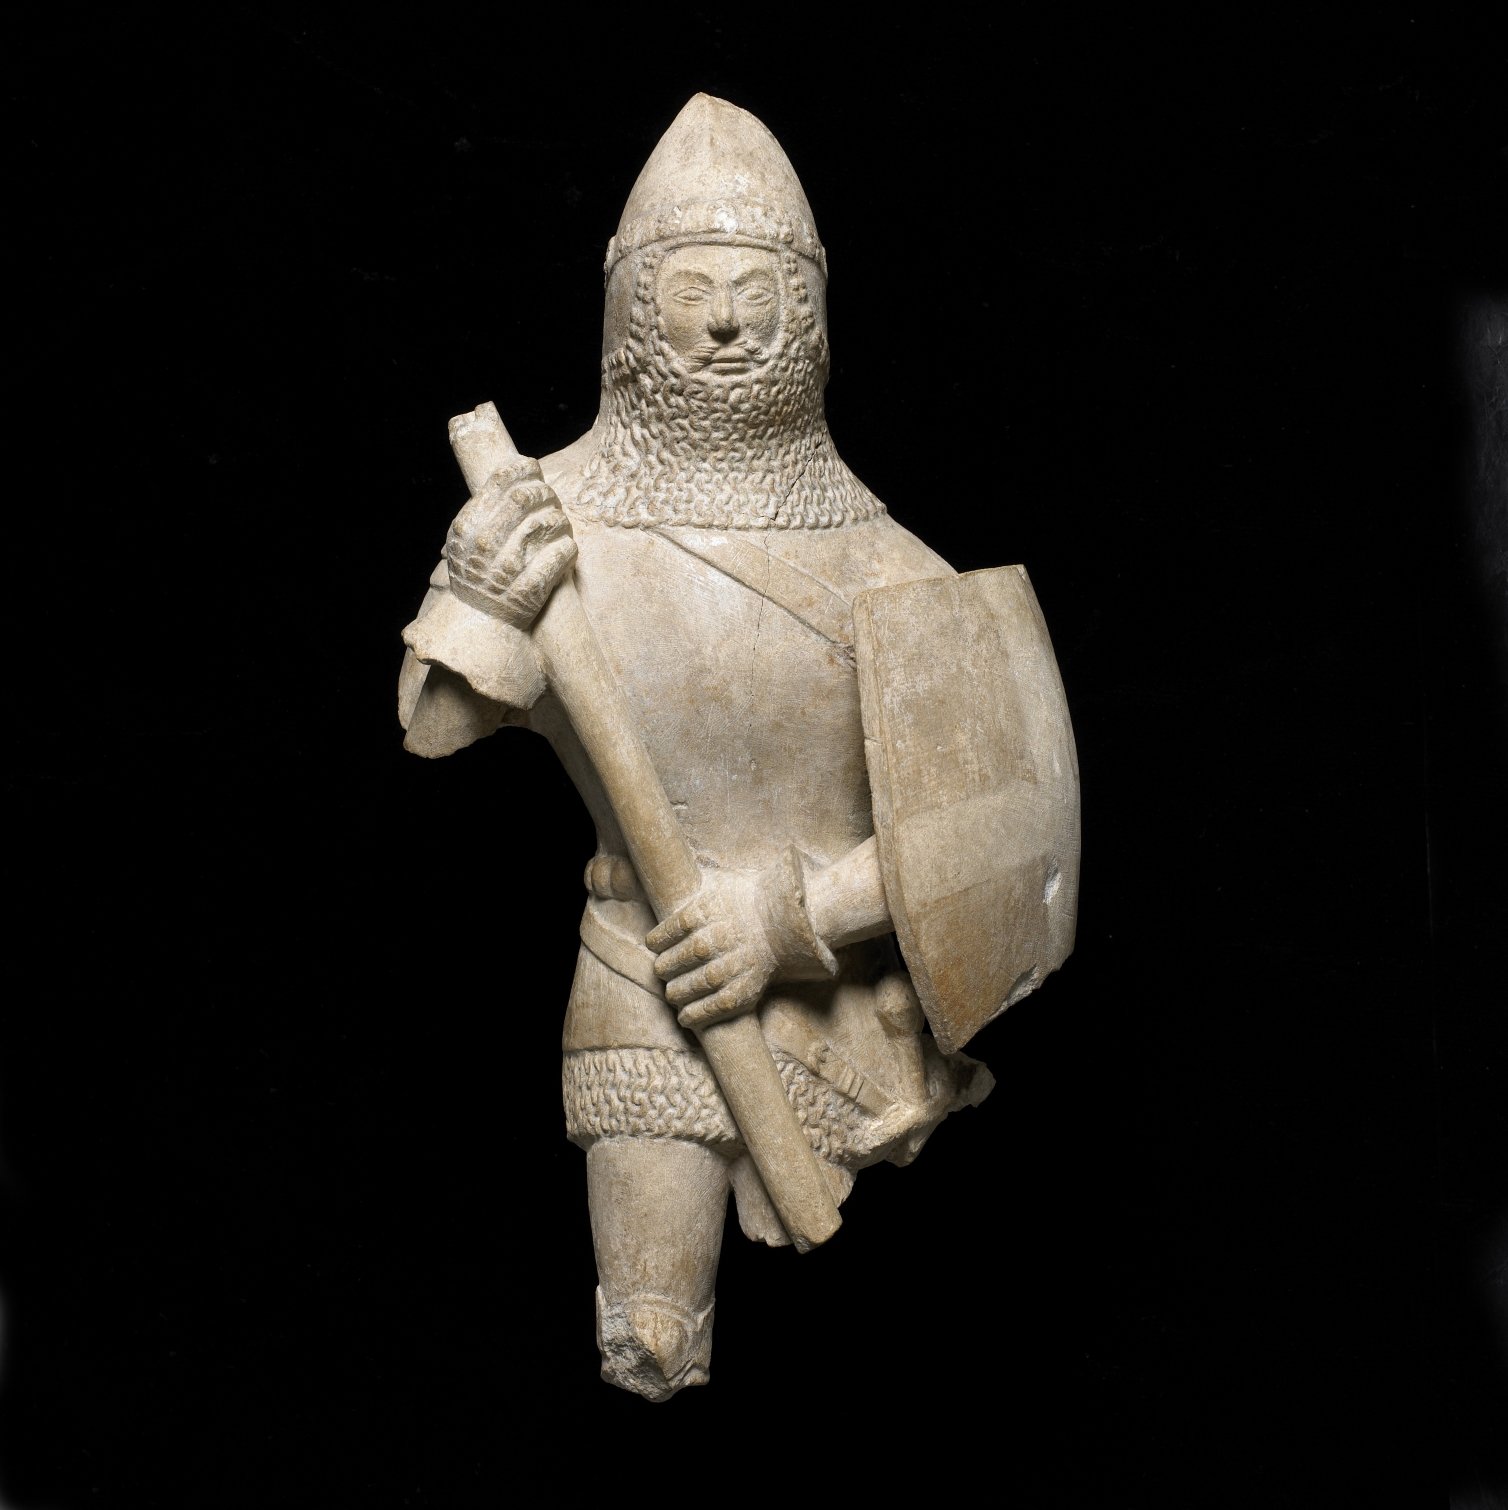 'Los pilares de Europa en la Edad Media': el British Museum en el CaixaForum